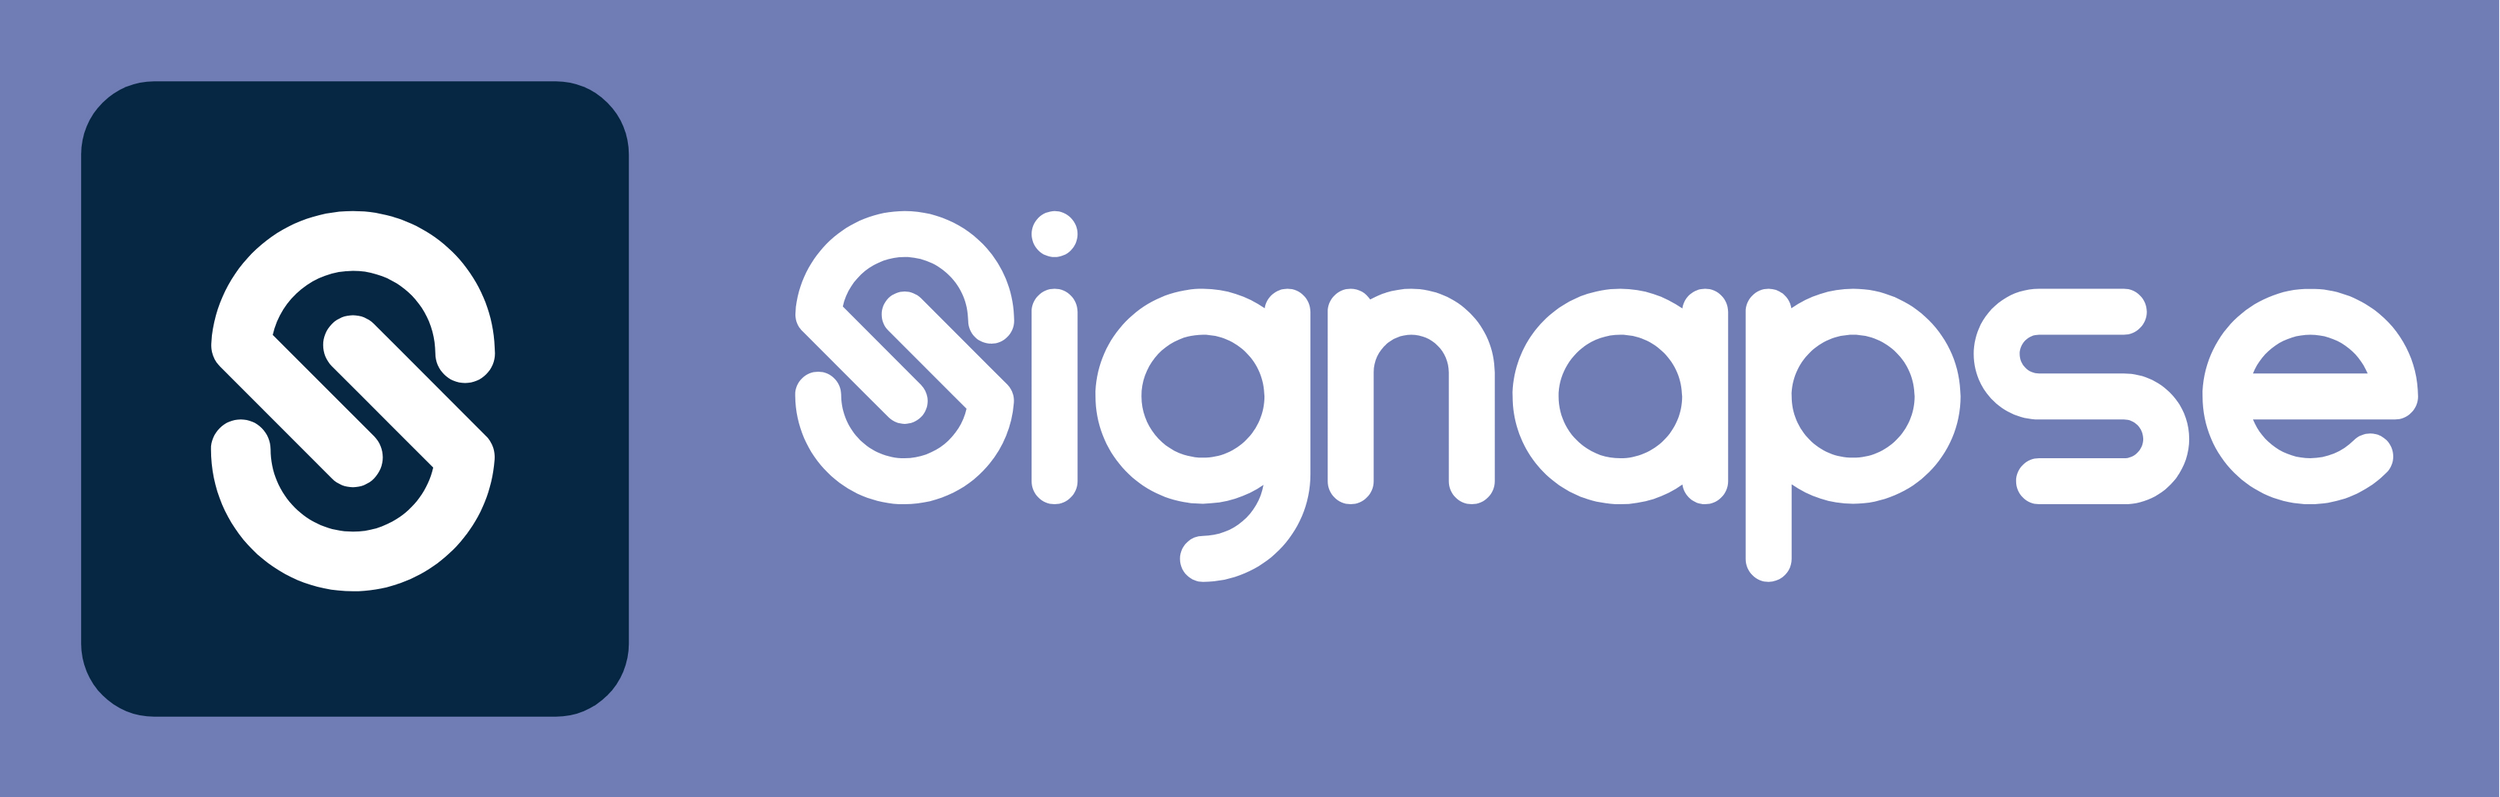 signapse logo